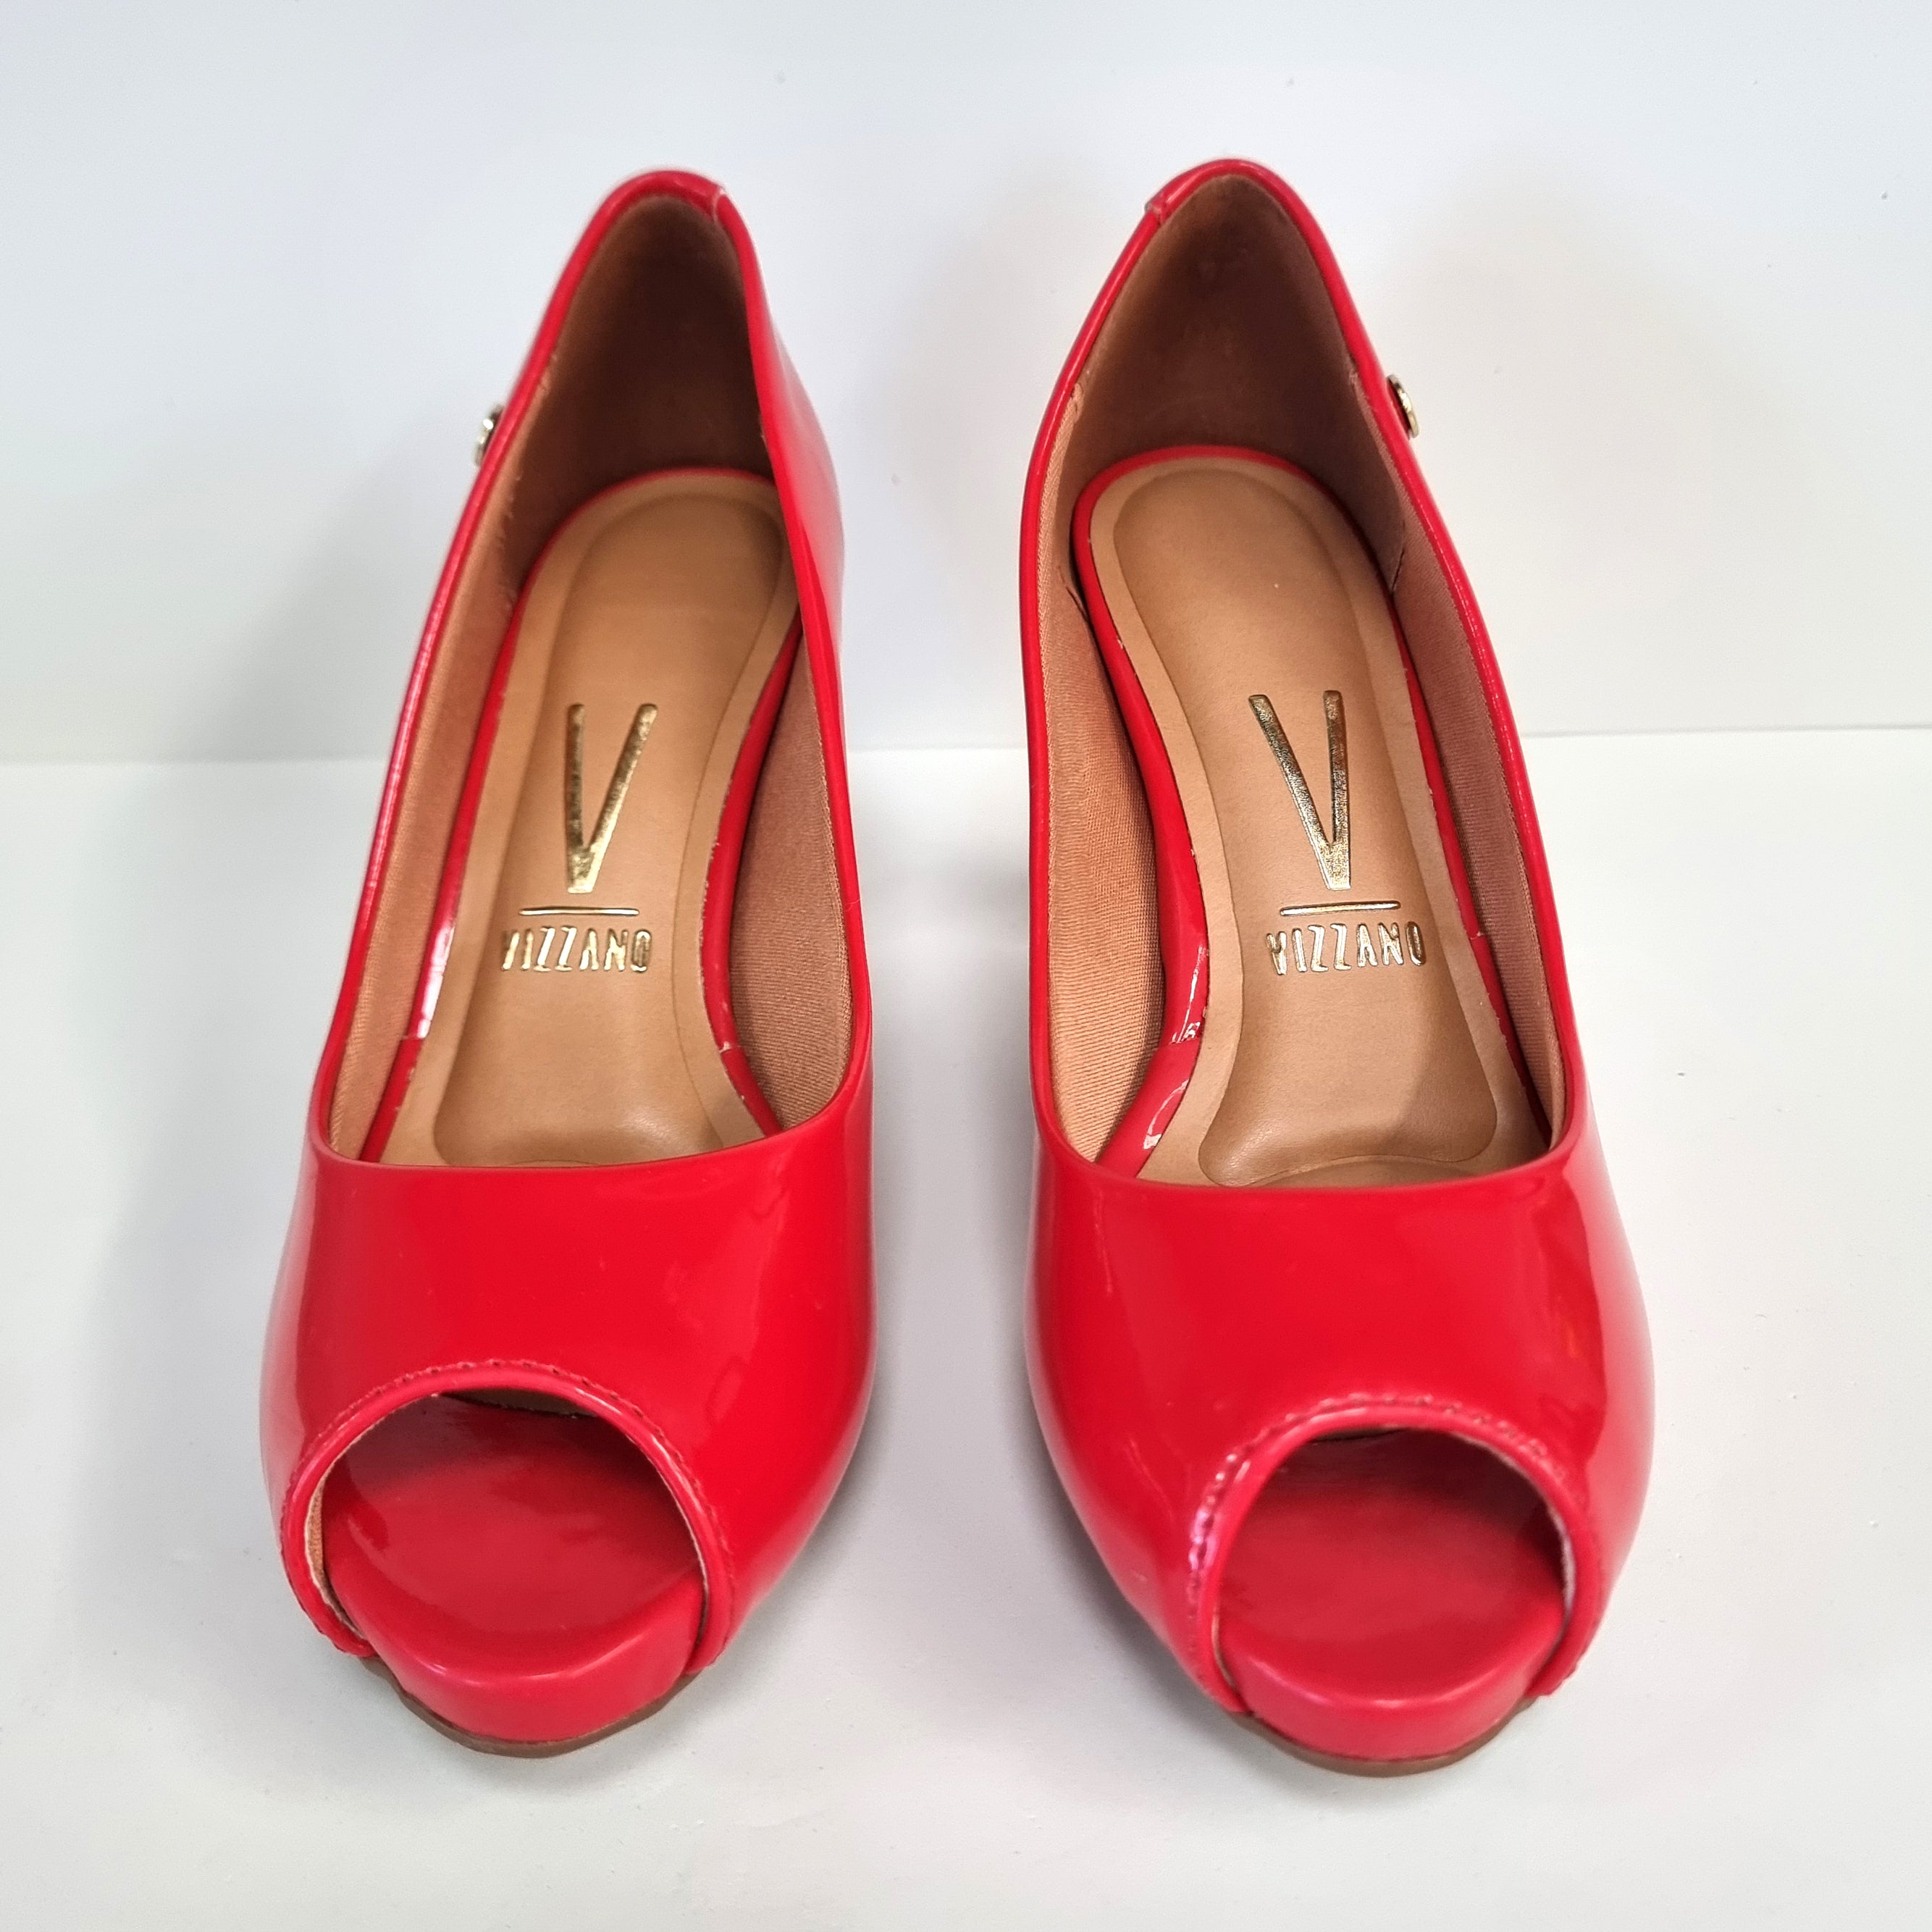 Vizzano 1840-300 Mid Heel Peeptoe Pump in Red Patent